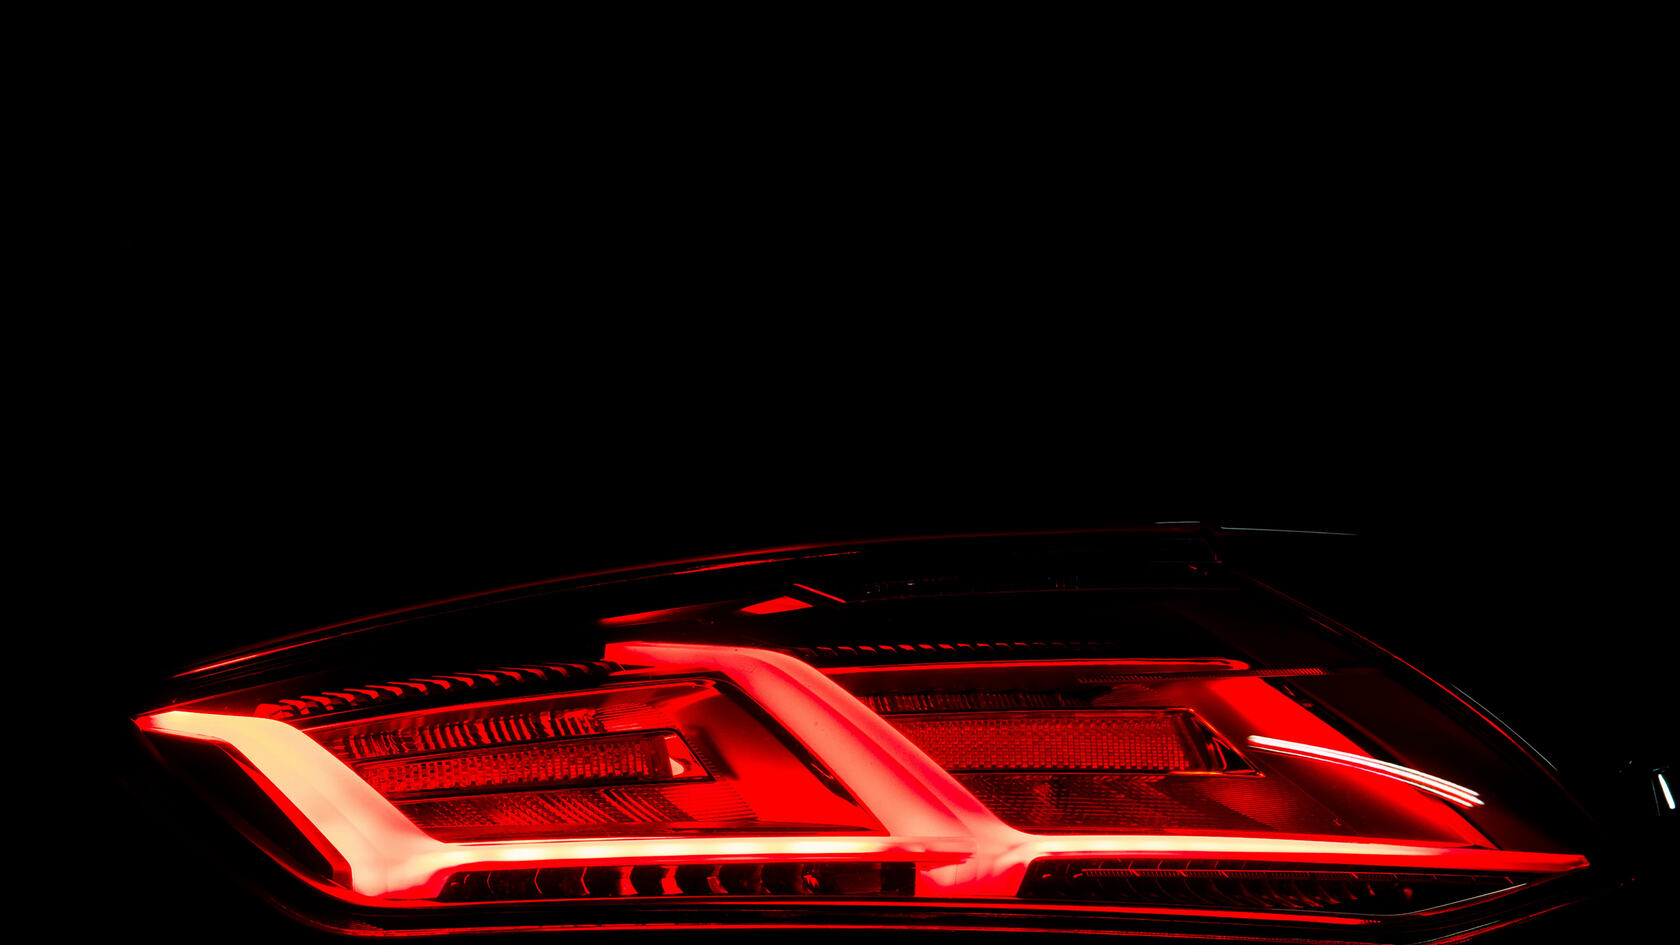 红色奥迪TT跑车高科技内饰及炫酷的车灯细节部分展示壁纸套图13